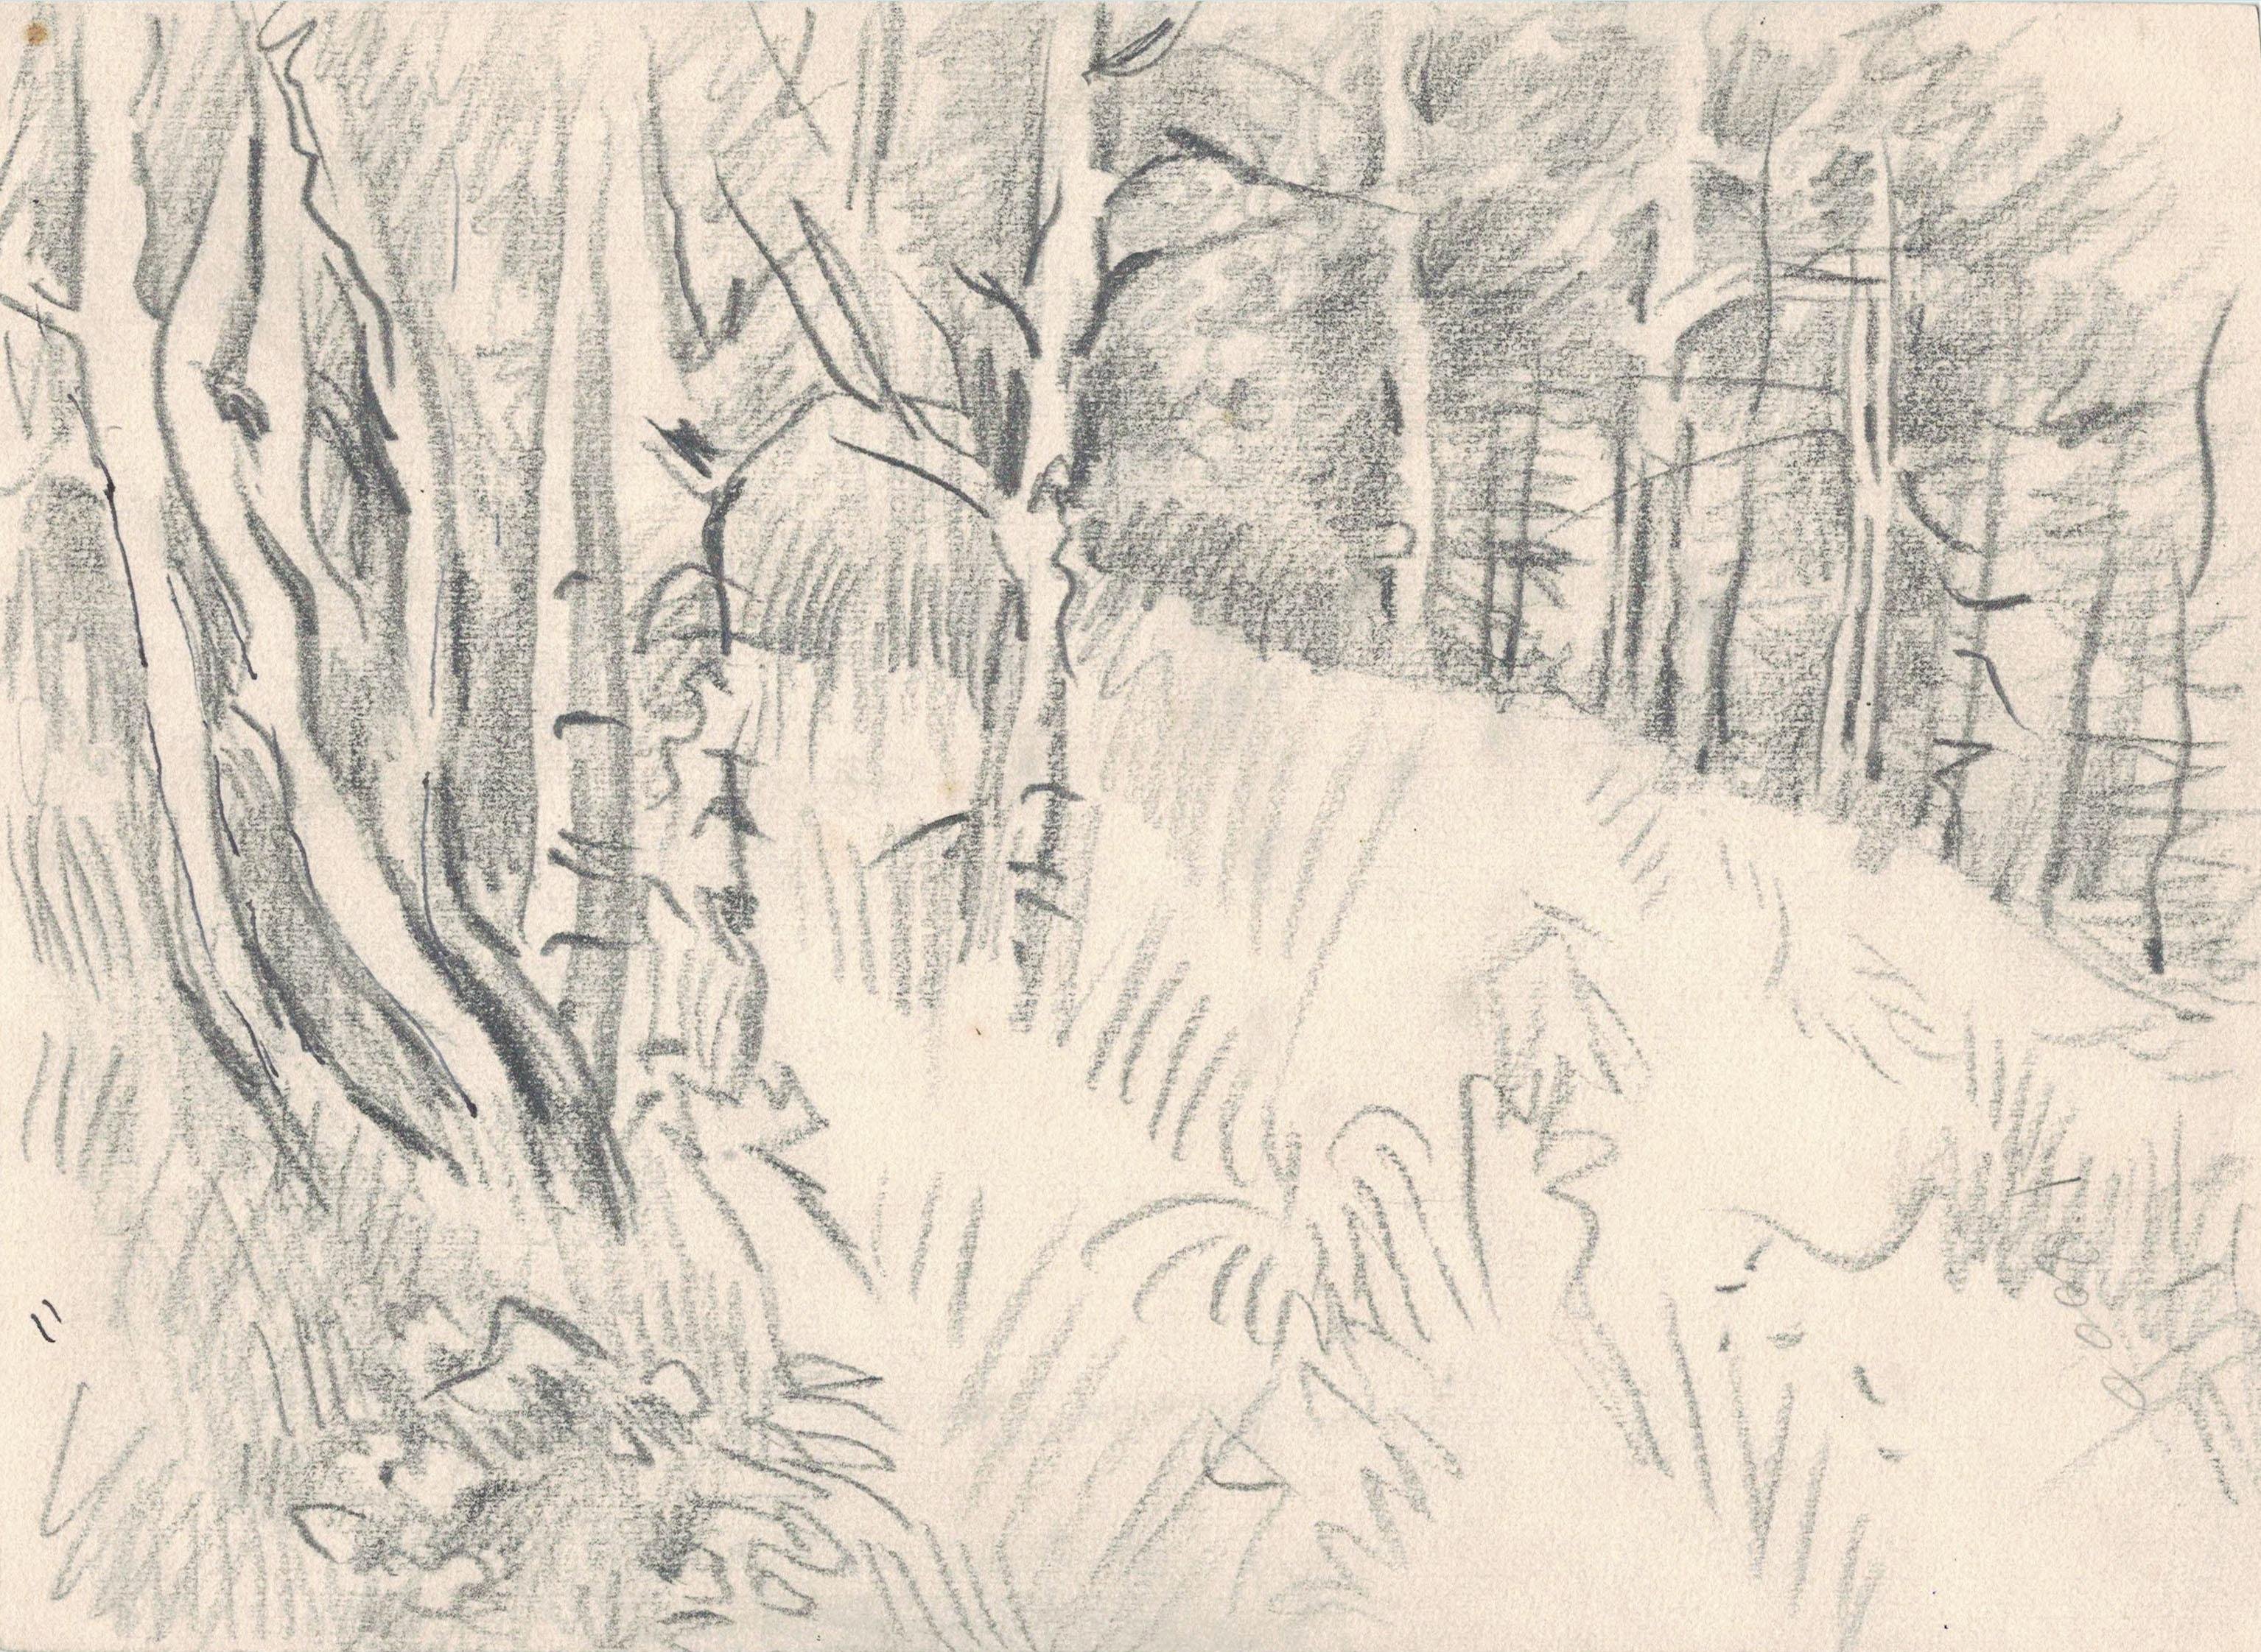 Первый день васюткино озеро. Зарисовки карандашом иллюстрации Васюткино озеро. Васюткино озеро рисунок карандашом. Рисунок к произведению Васюткино озеро. Рисунок Васюткино озеро раскраска.